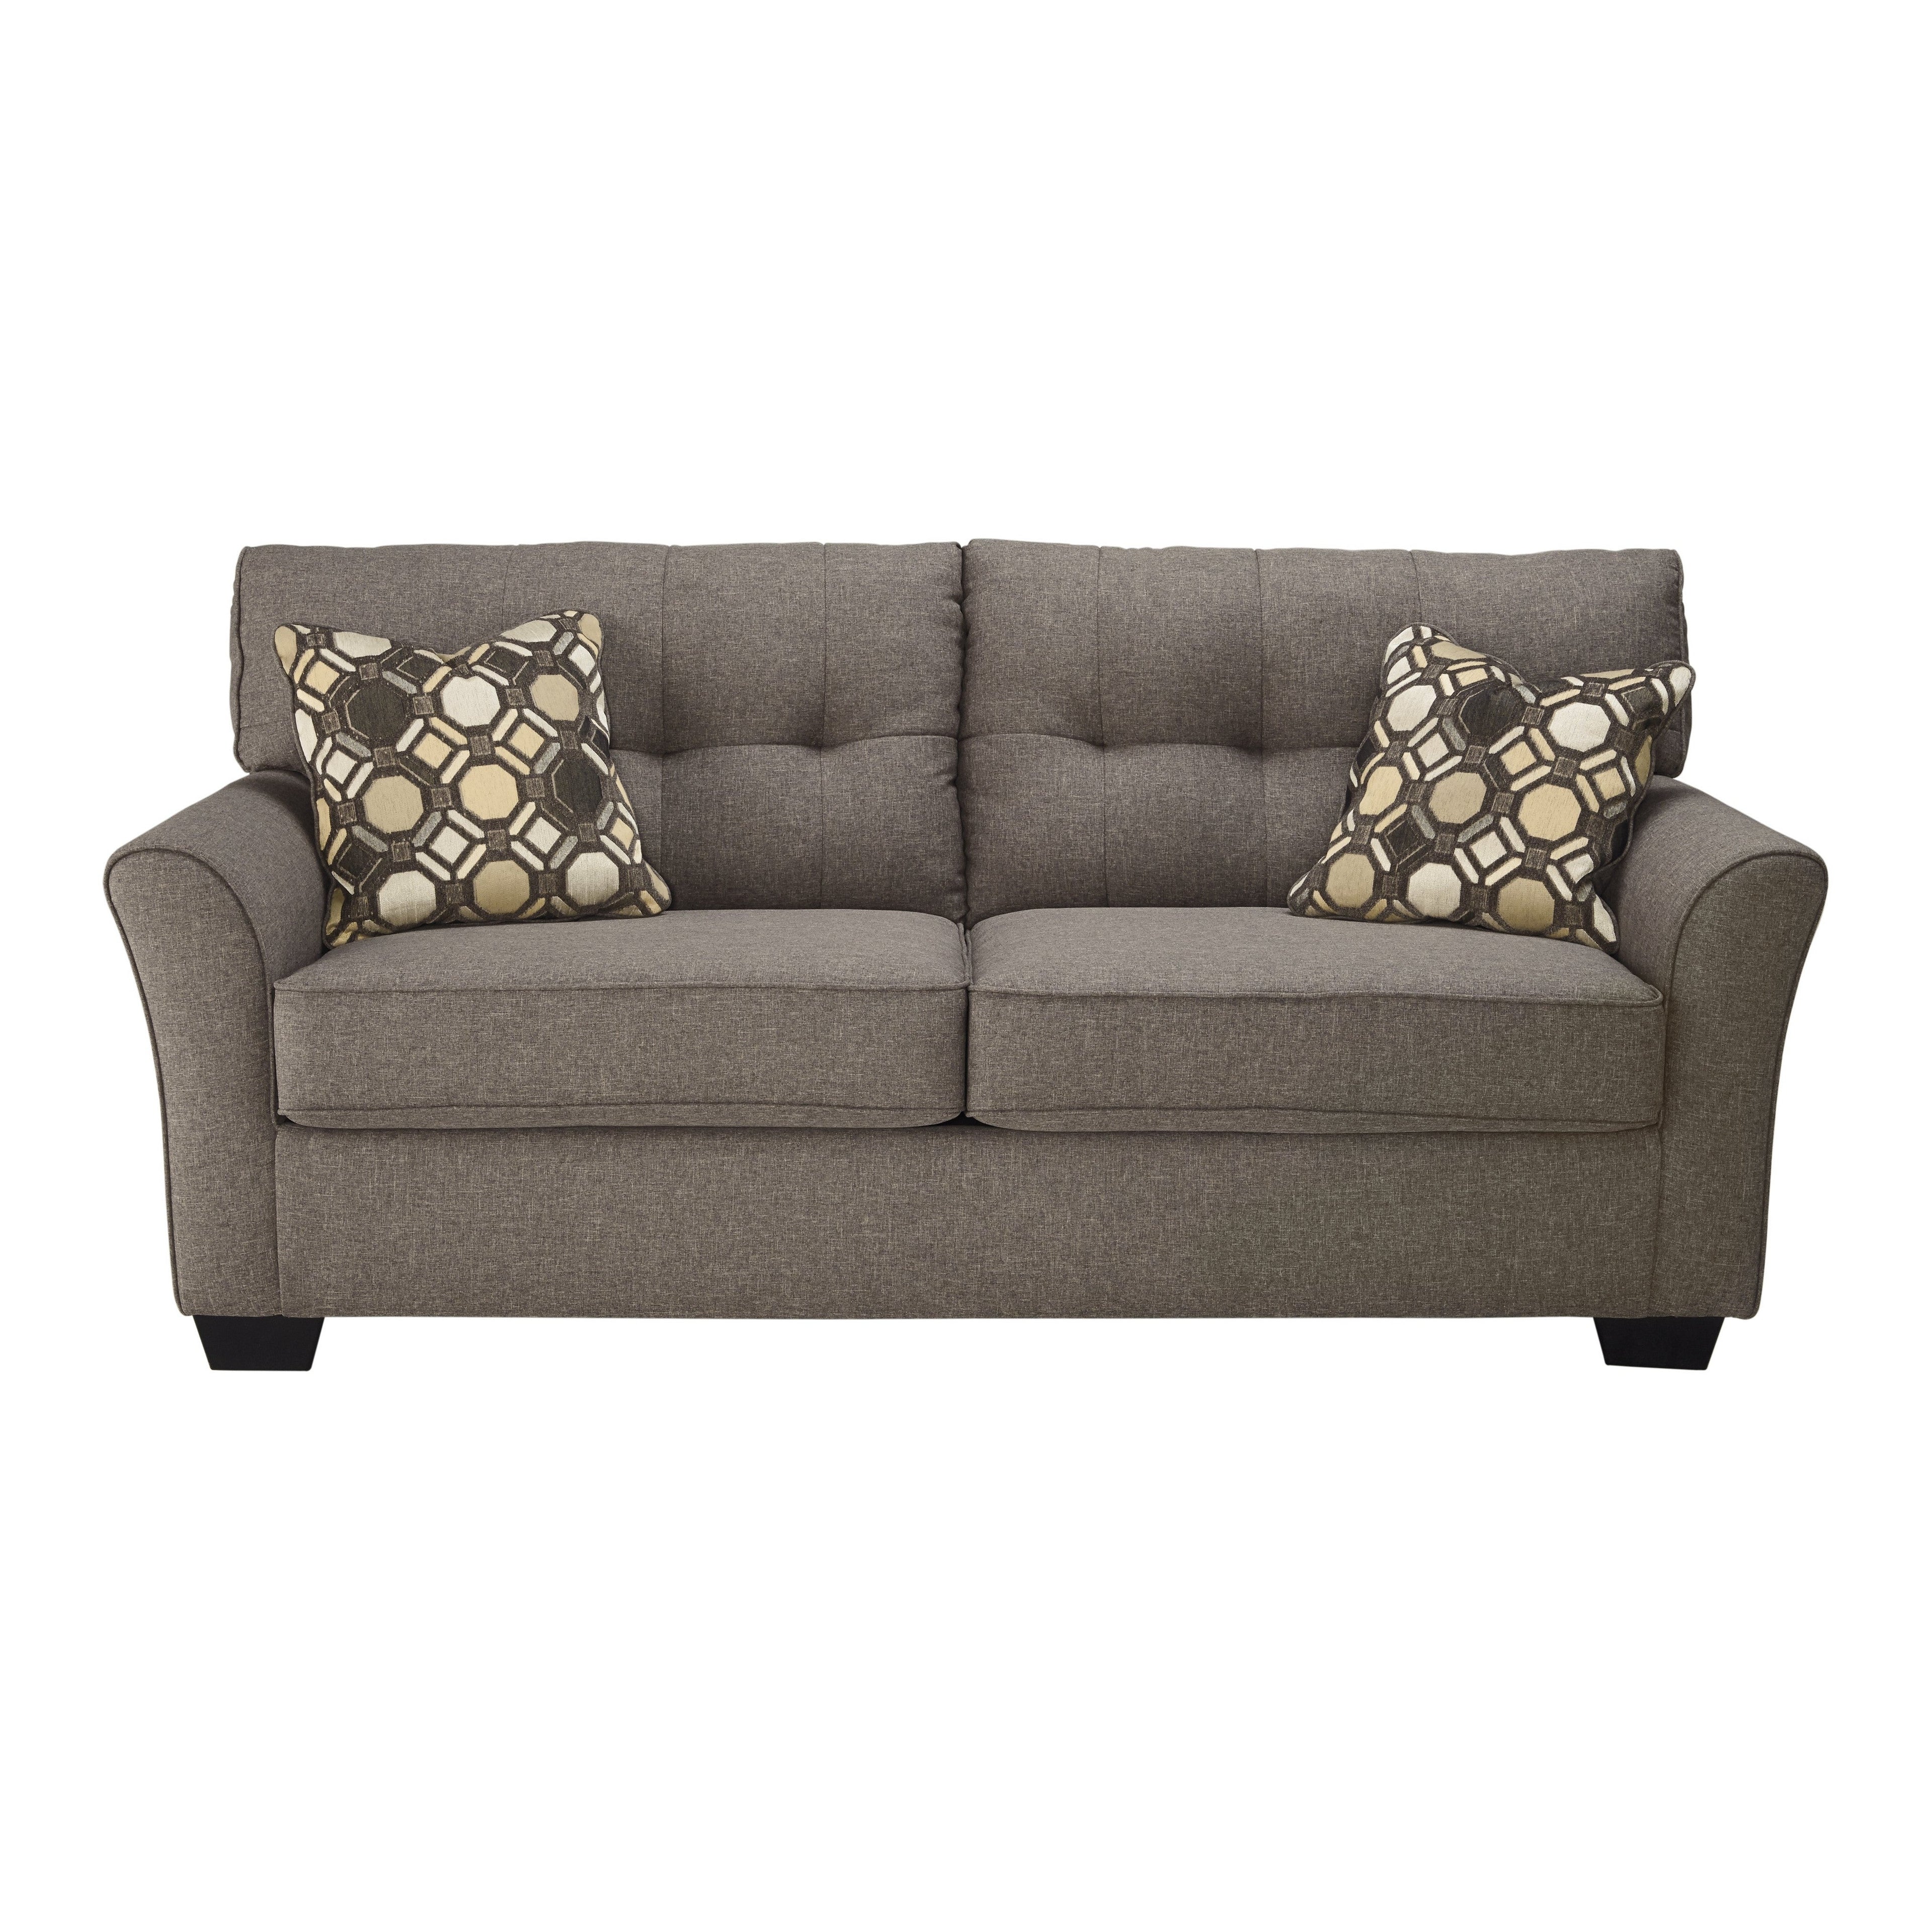 Tibbee Full Sofa Sleeper Ash-9910136